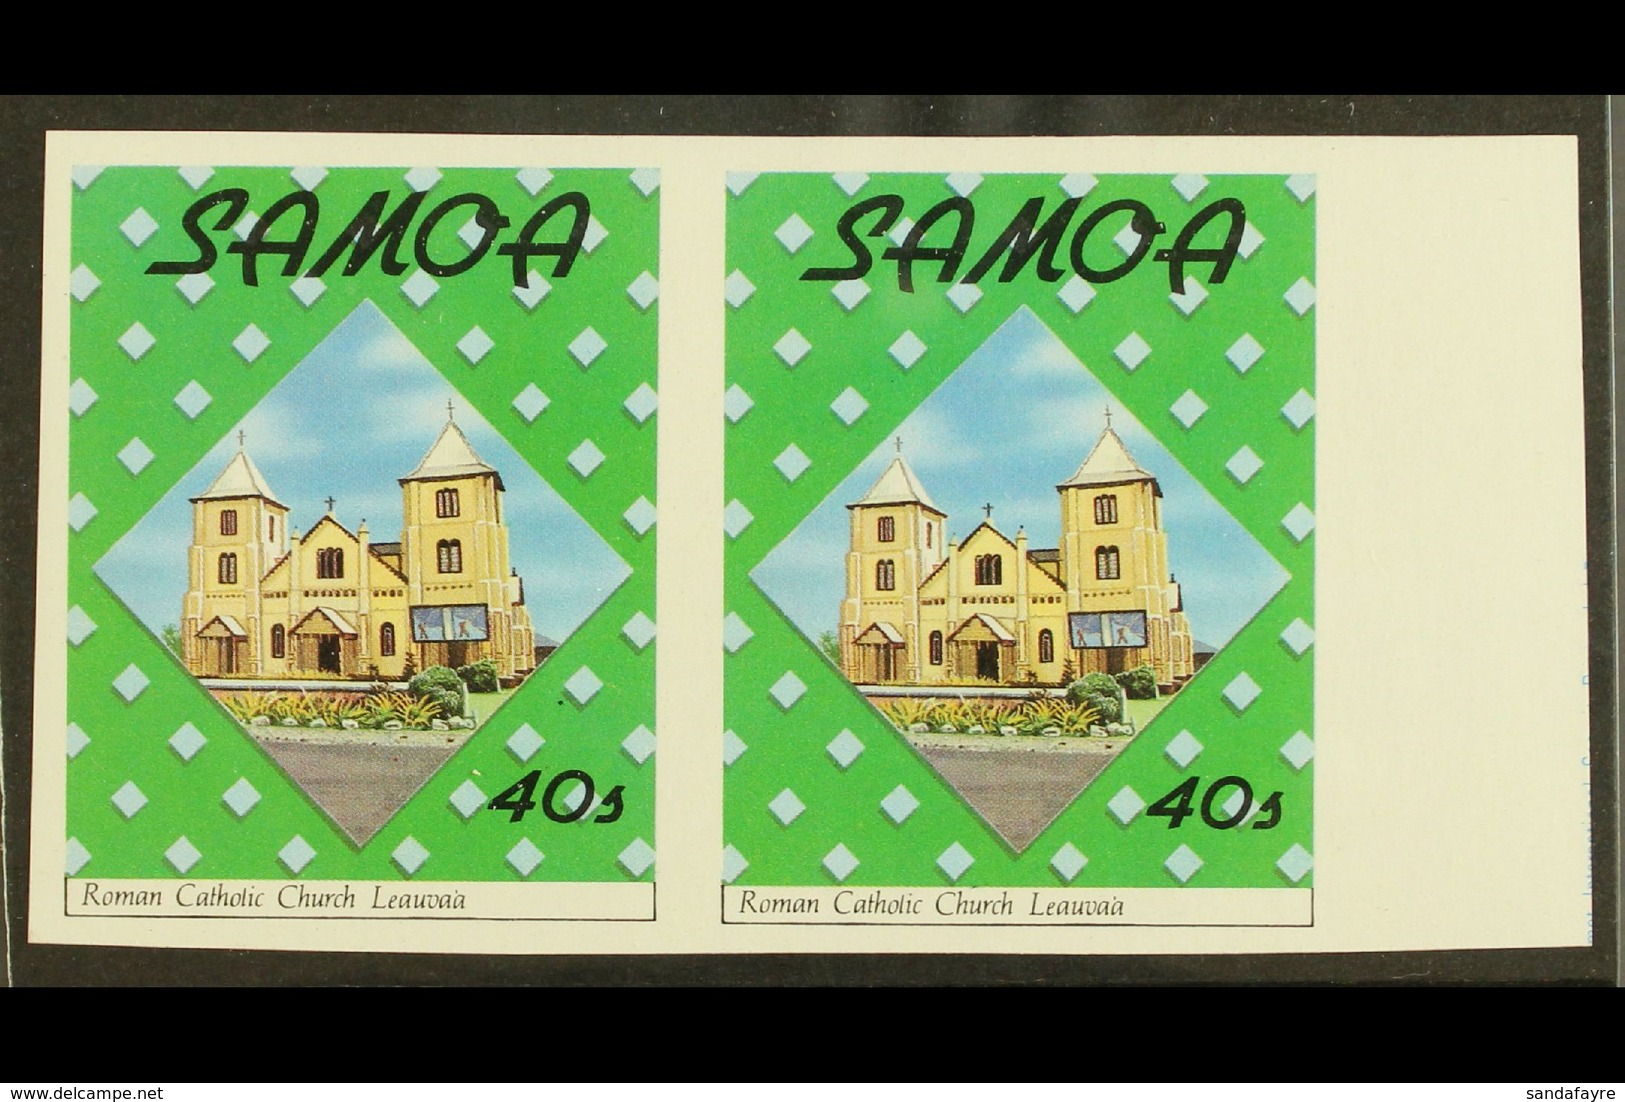 SAMOA - Samoa